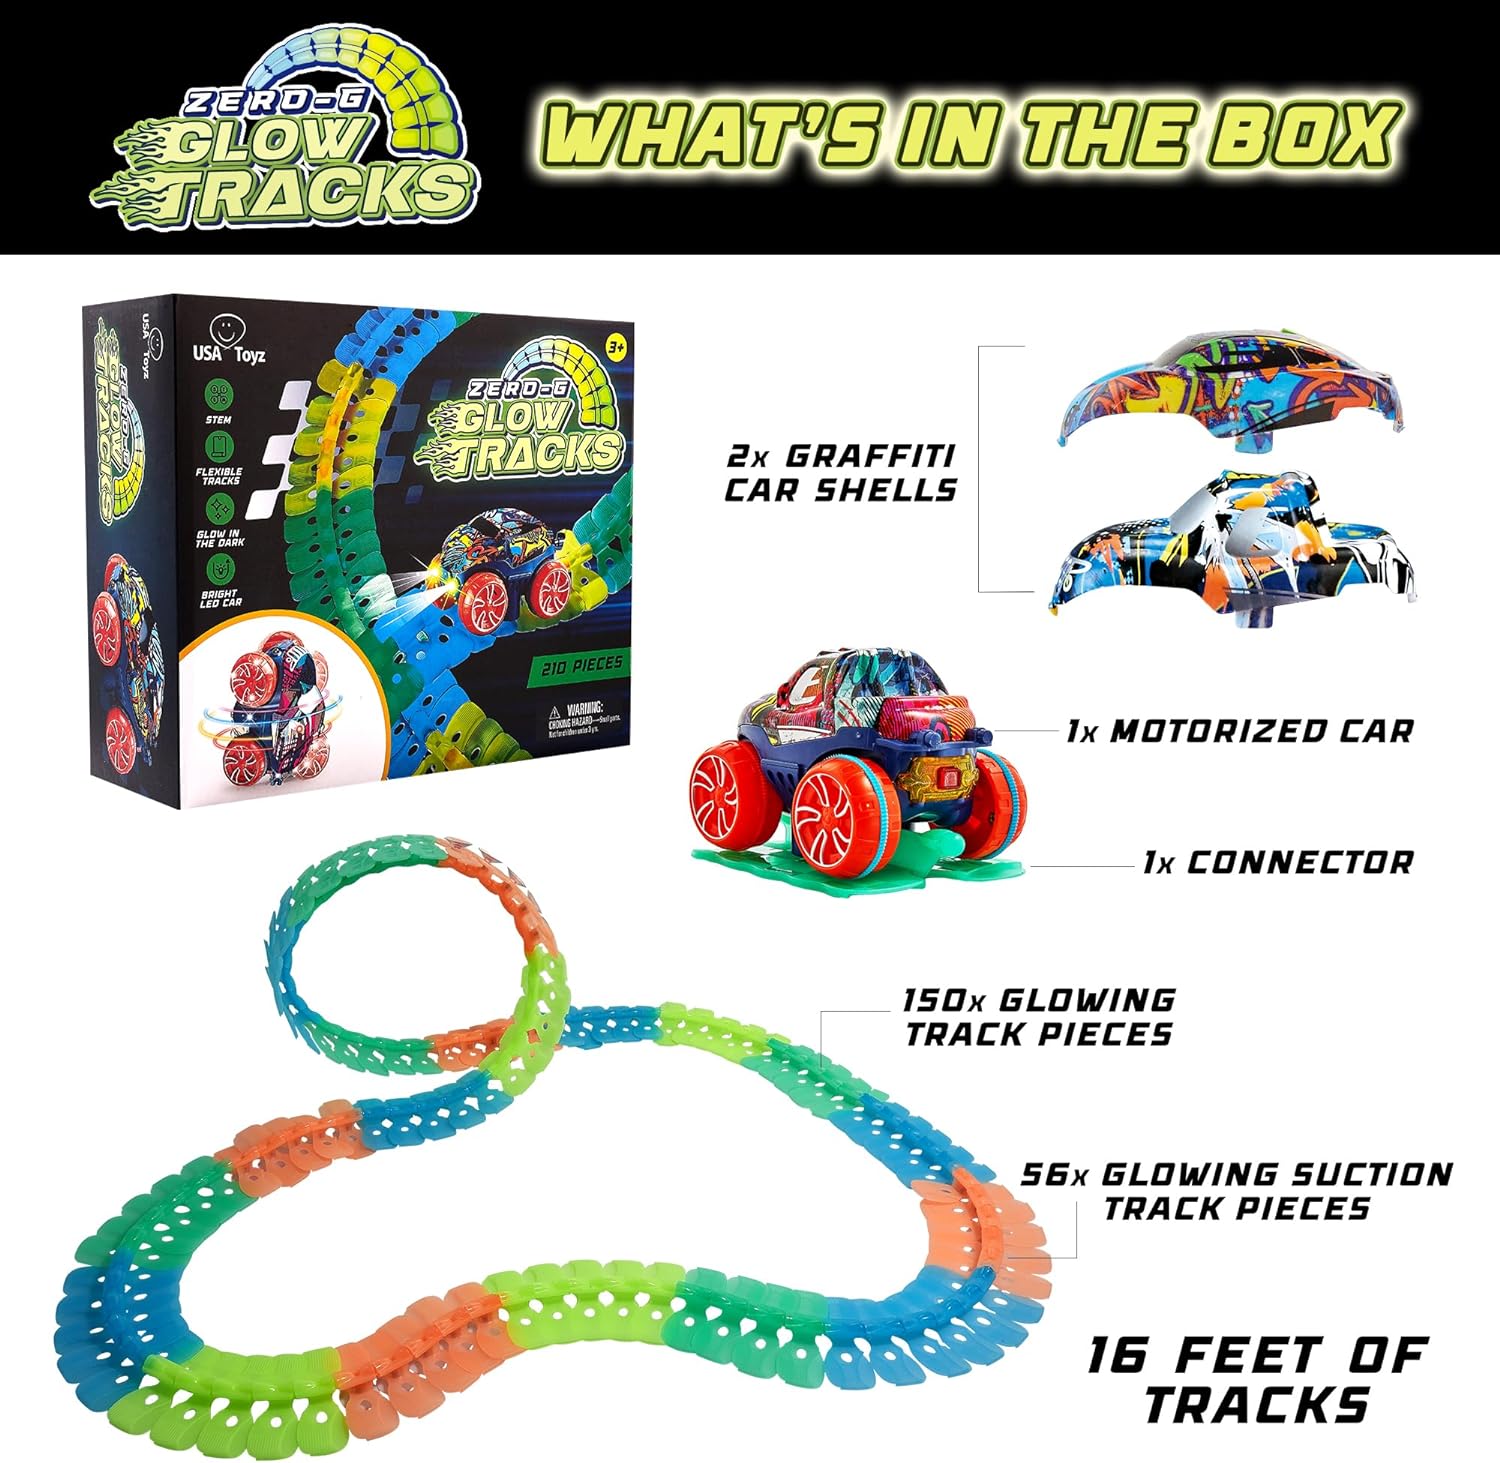 Magic Glow Racing Track Toys, Turn Road Bridge Crossroads